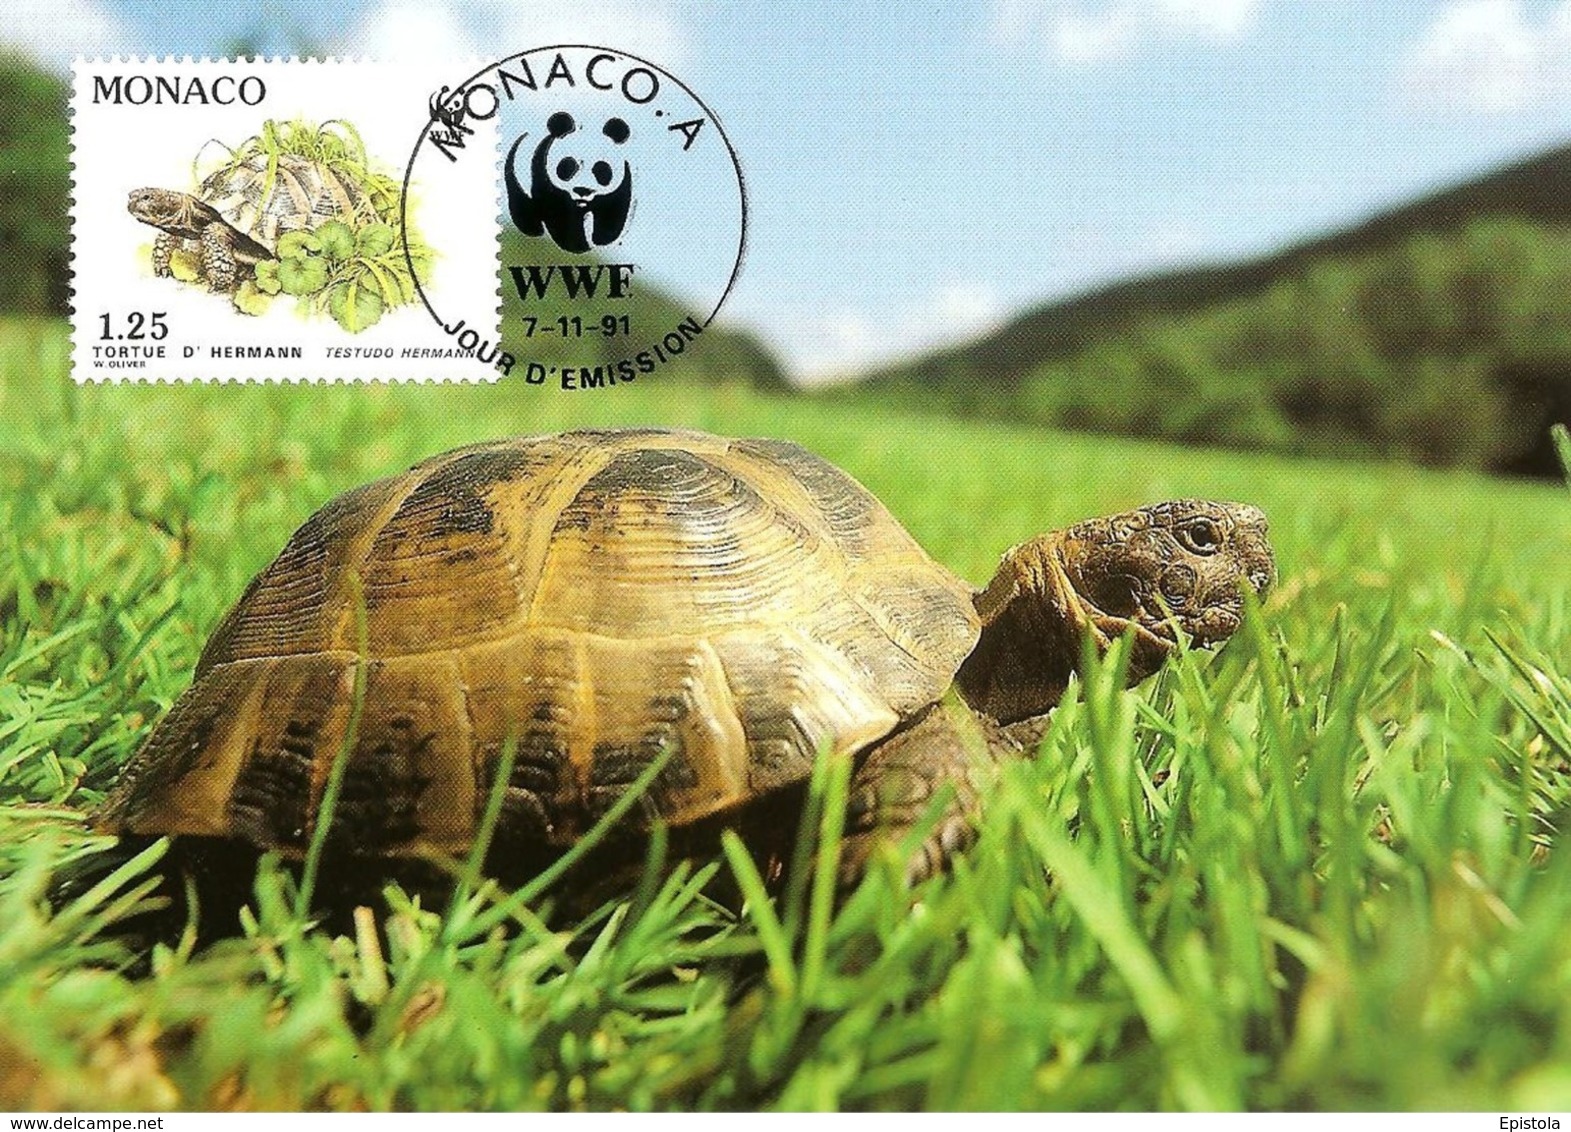 1991 - MONACO - Tortue Hermann Tortoise WWF - Sammlungen & Lose